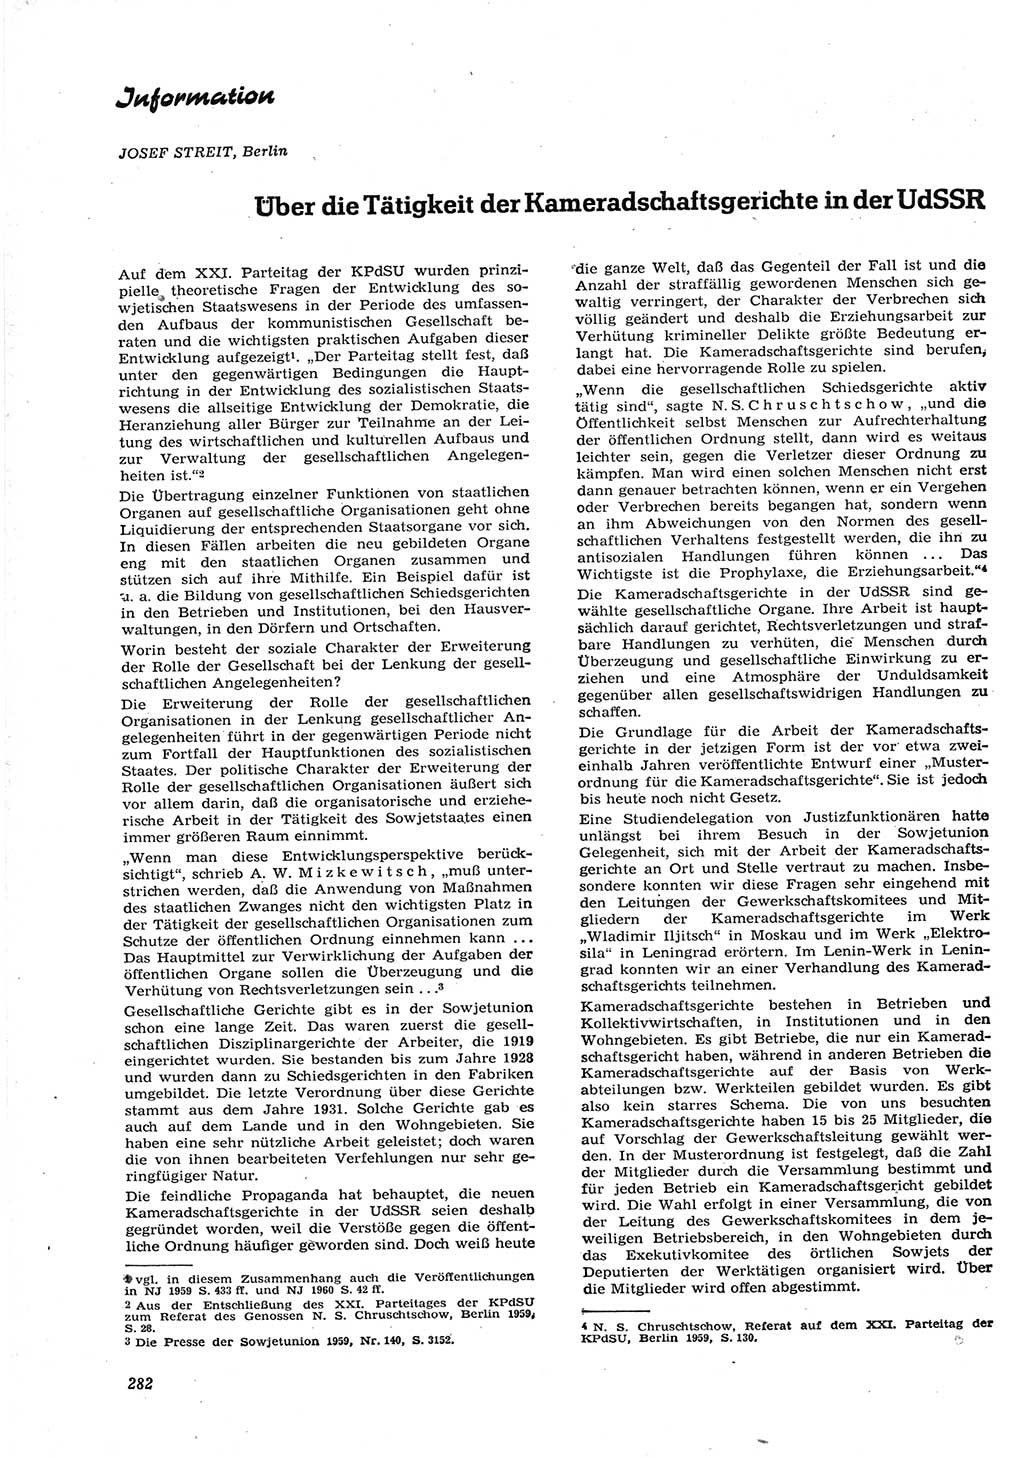 Neue Justiz (NJ), Zeitschrift für Recht und Rechtswissenschaft [Deutsche Demokratische Republik (DDR)], 15. Jahrgang 1961, Seite 282 (NJ DDR 1961, S. 282)